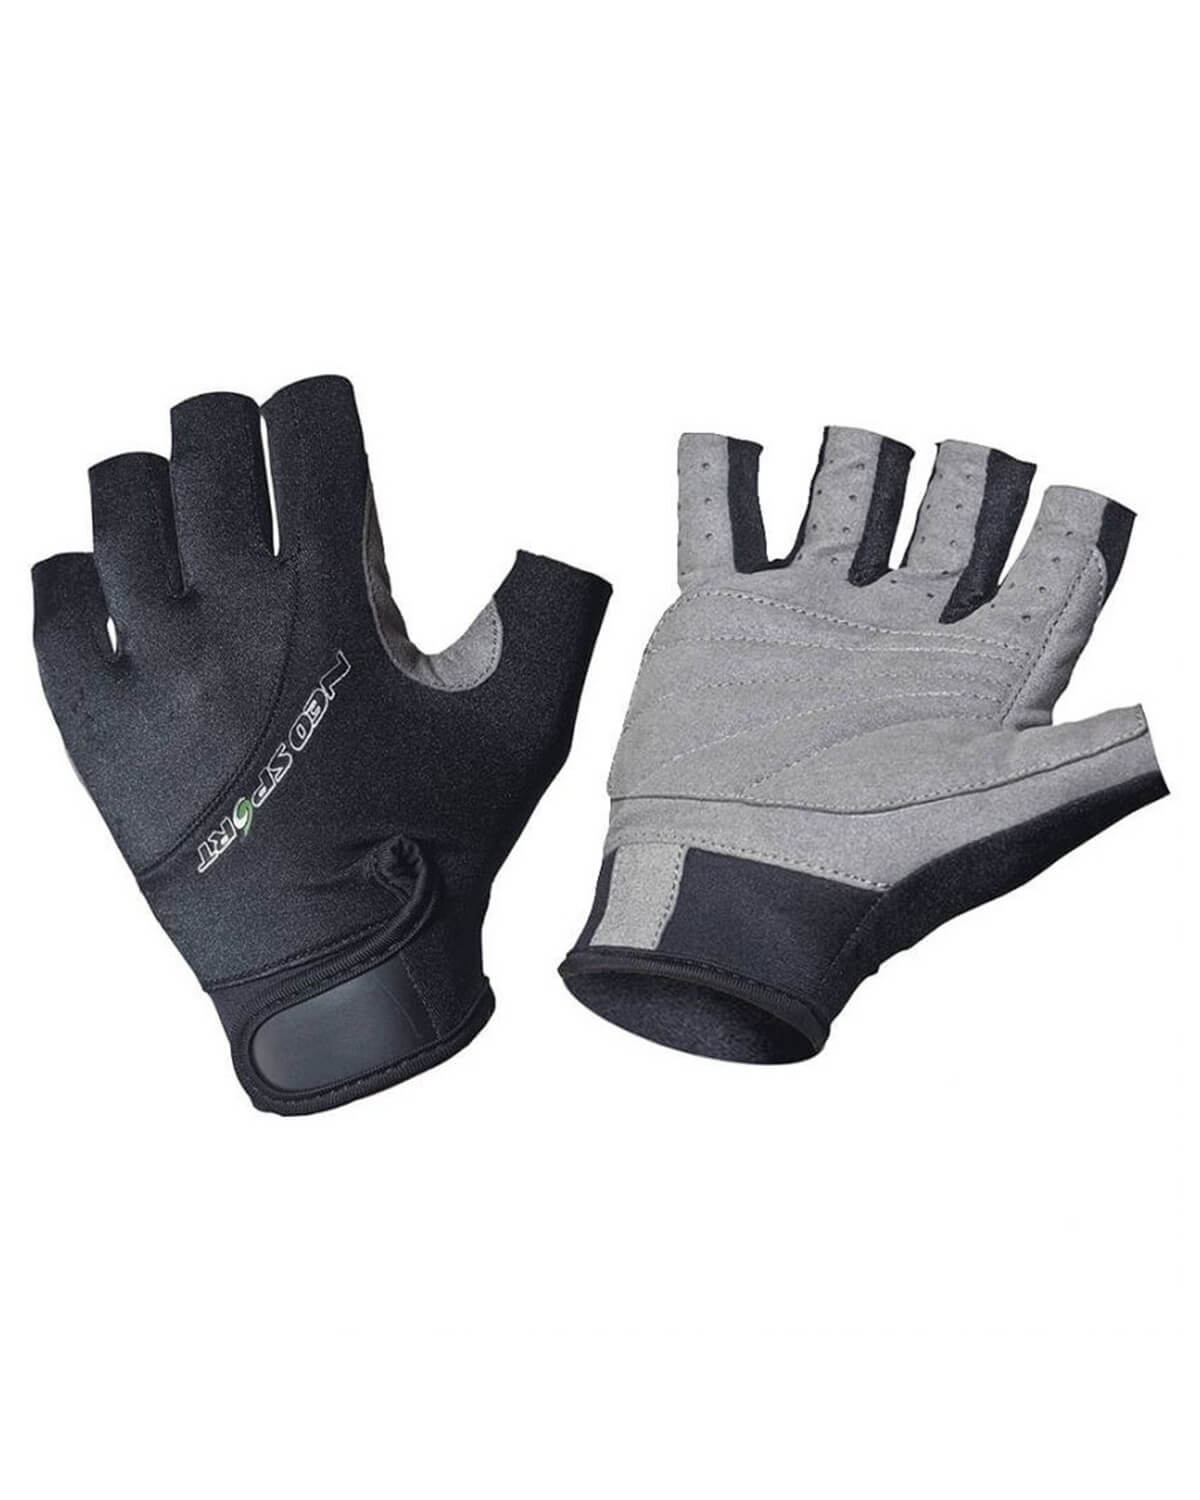 NeoSport Tipless Sport Gloves